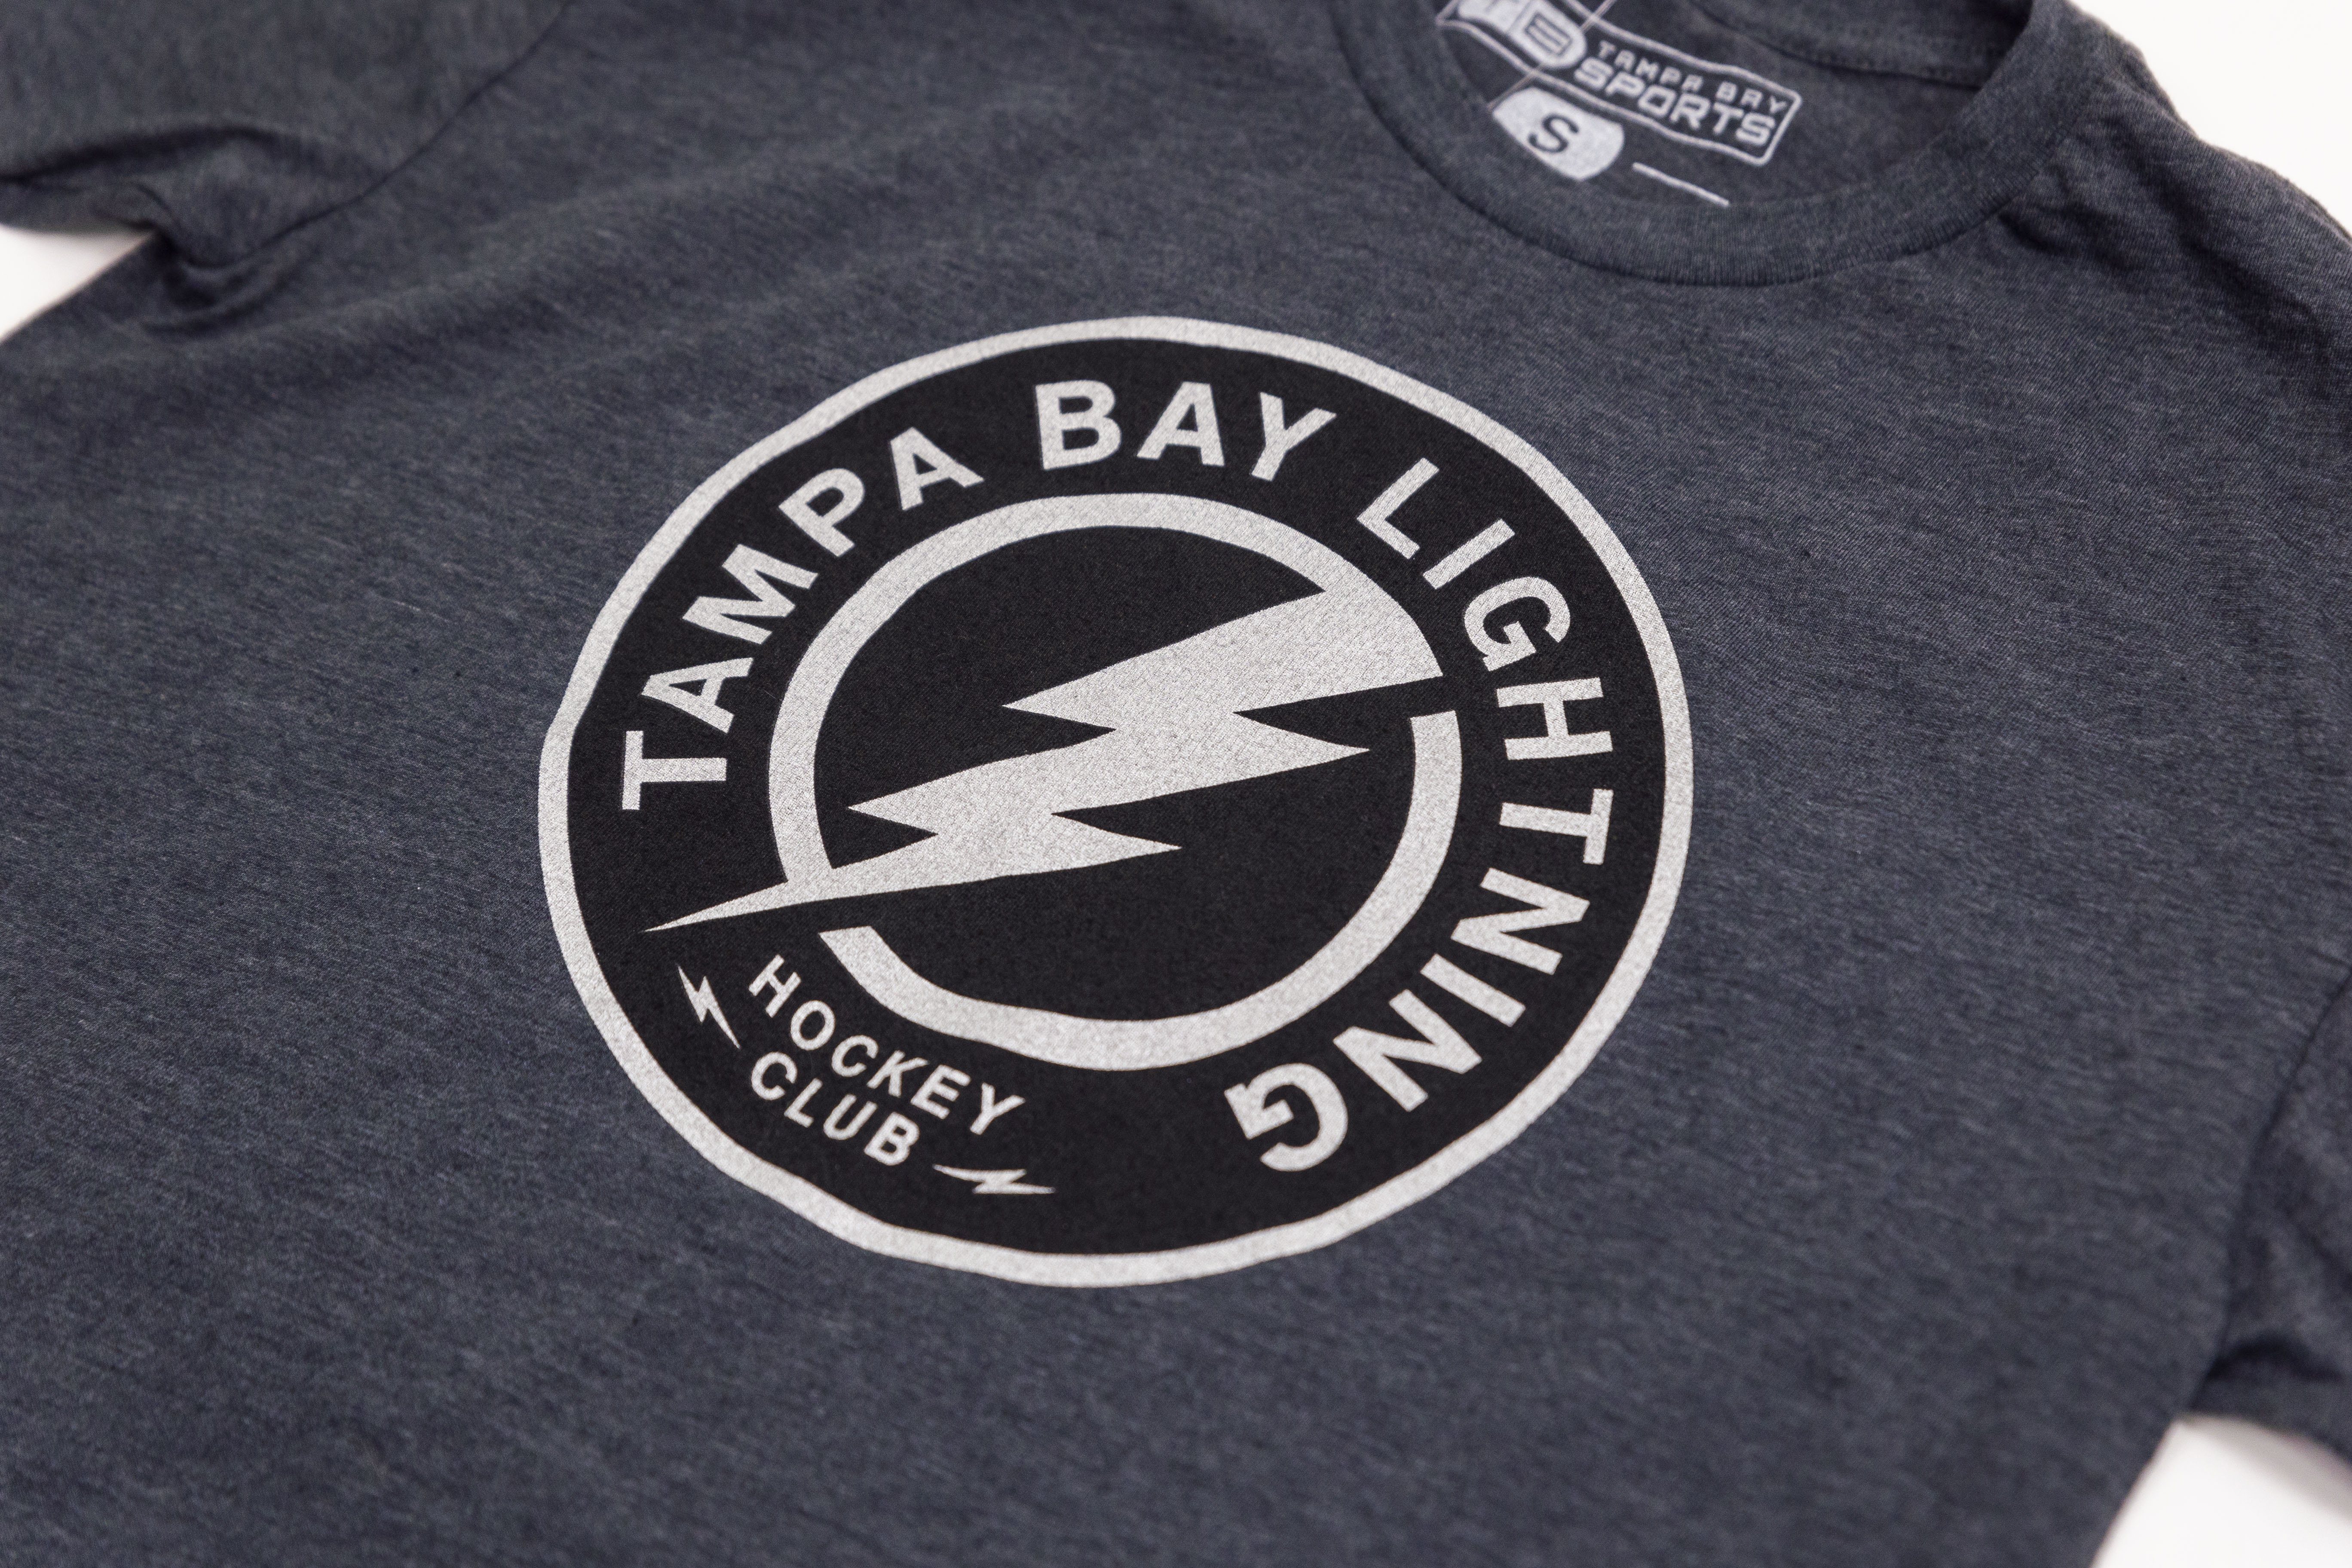 tampa bay lightning logo black